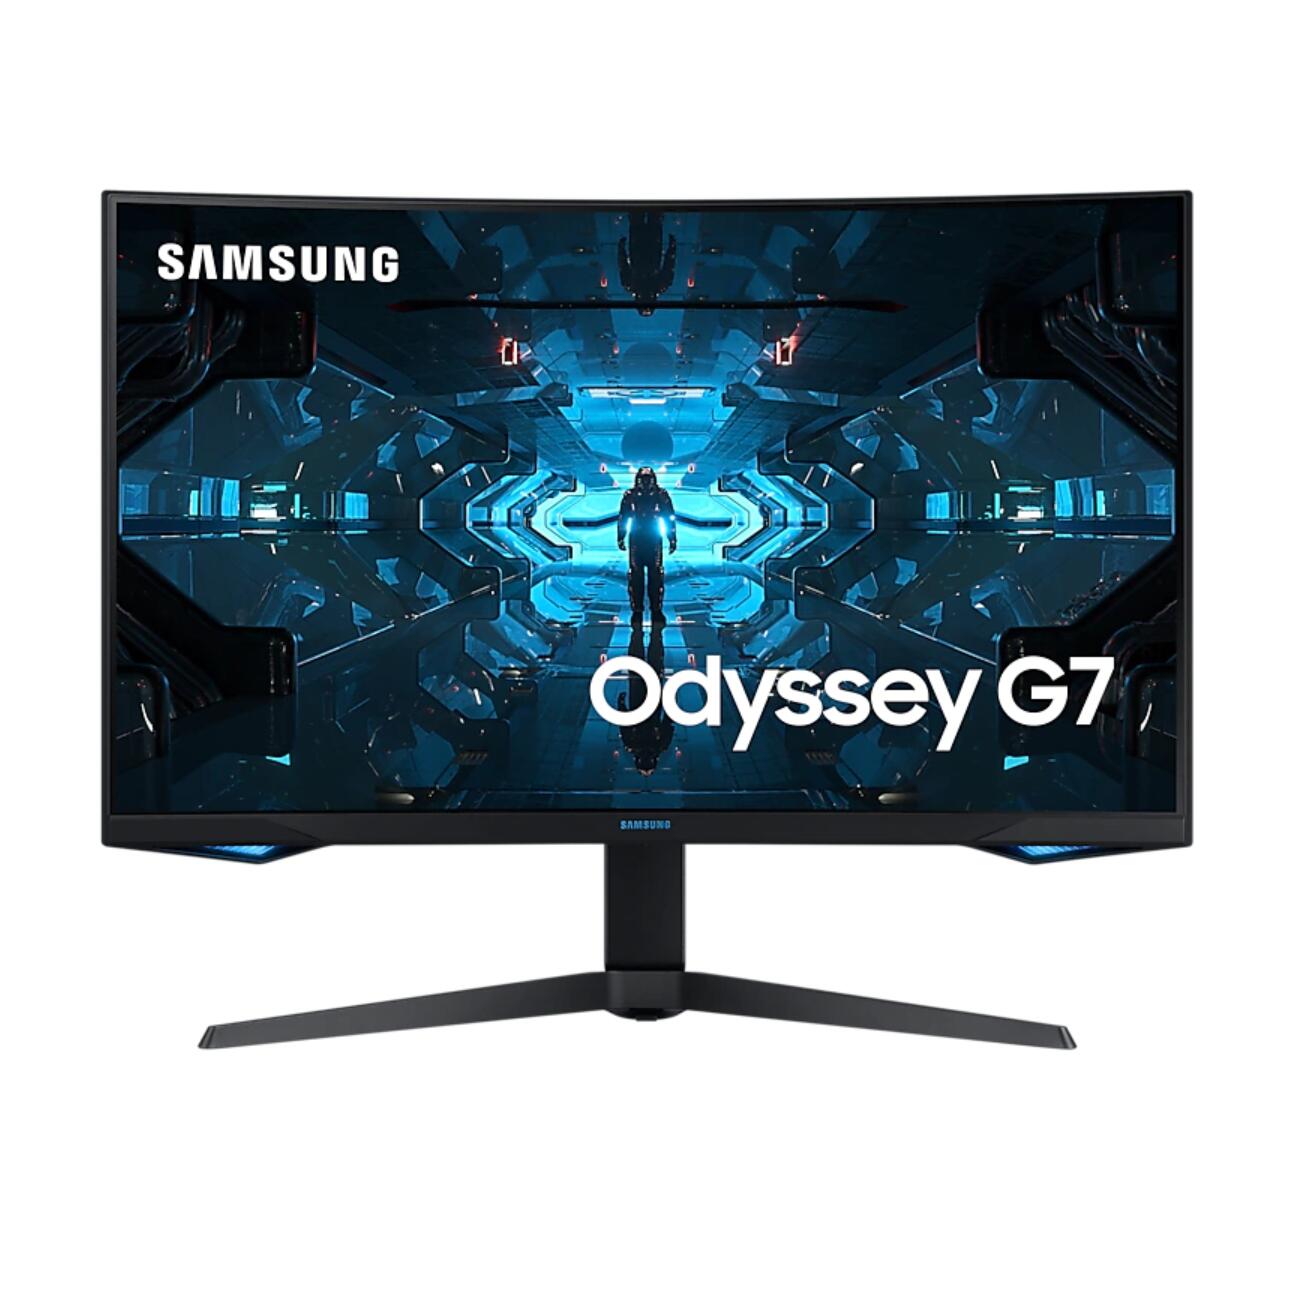 【税込送料無料】 SAMSUNG サムスン Odyssey G7 C32G75T 2560 x 1440(QHD) 32インチ スーパーウルトラワイドゲームモニター16:9 大画面 走査率 240Hz ー